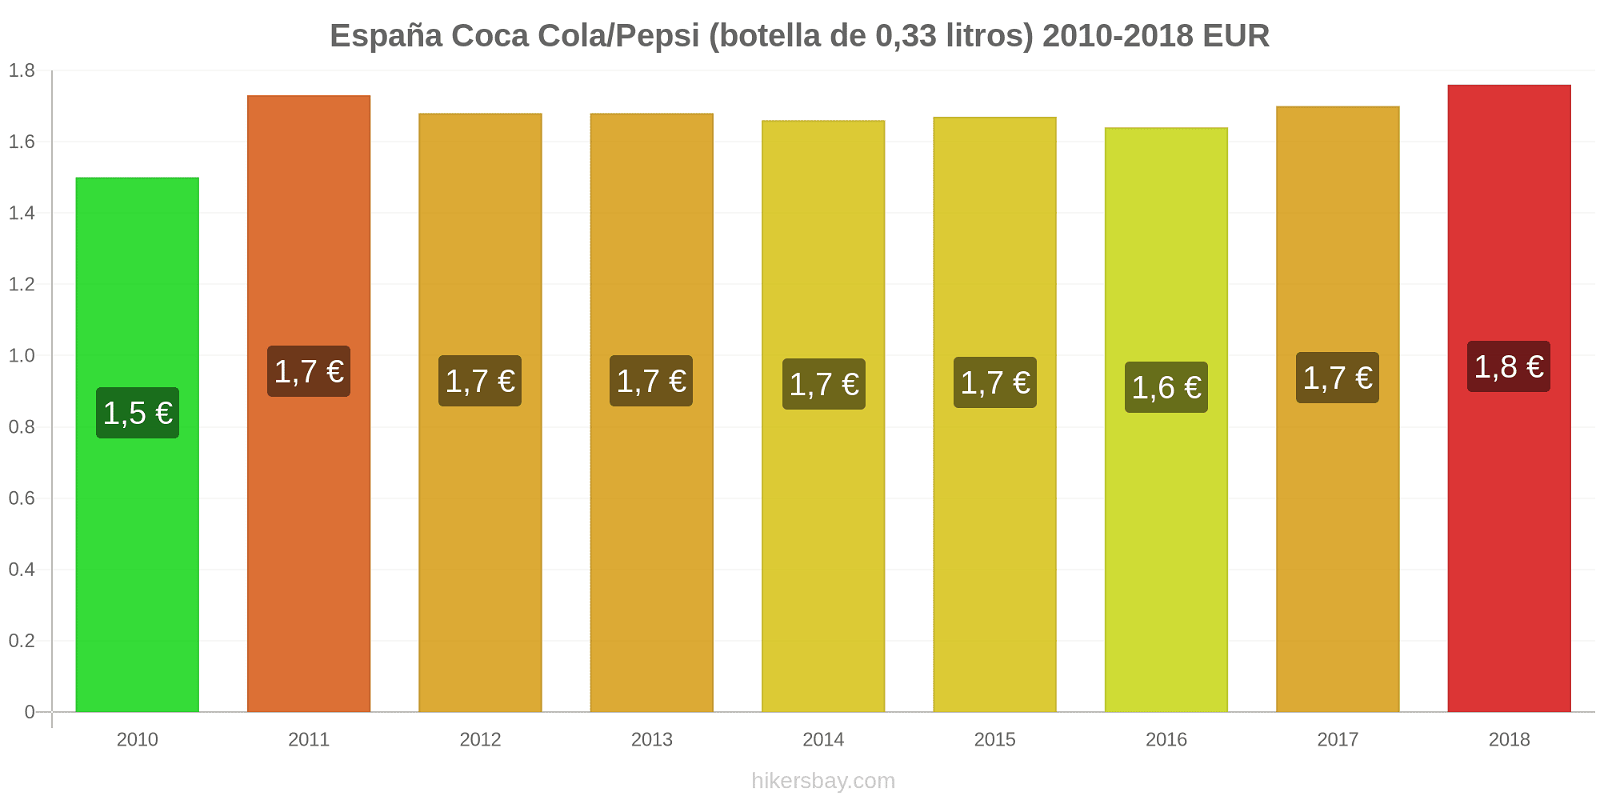 España cambios de precios Coca-Cola/Pepsi (botella de 0.33 litros) hikersbay.com